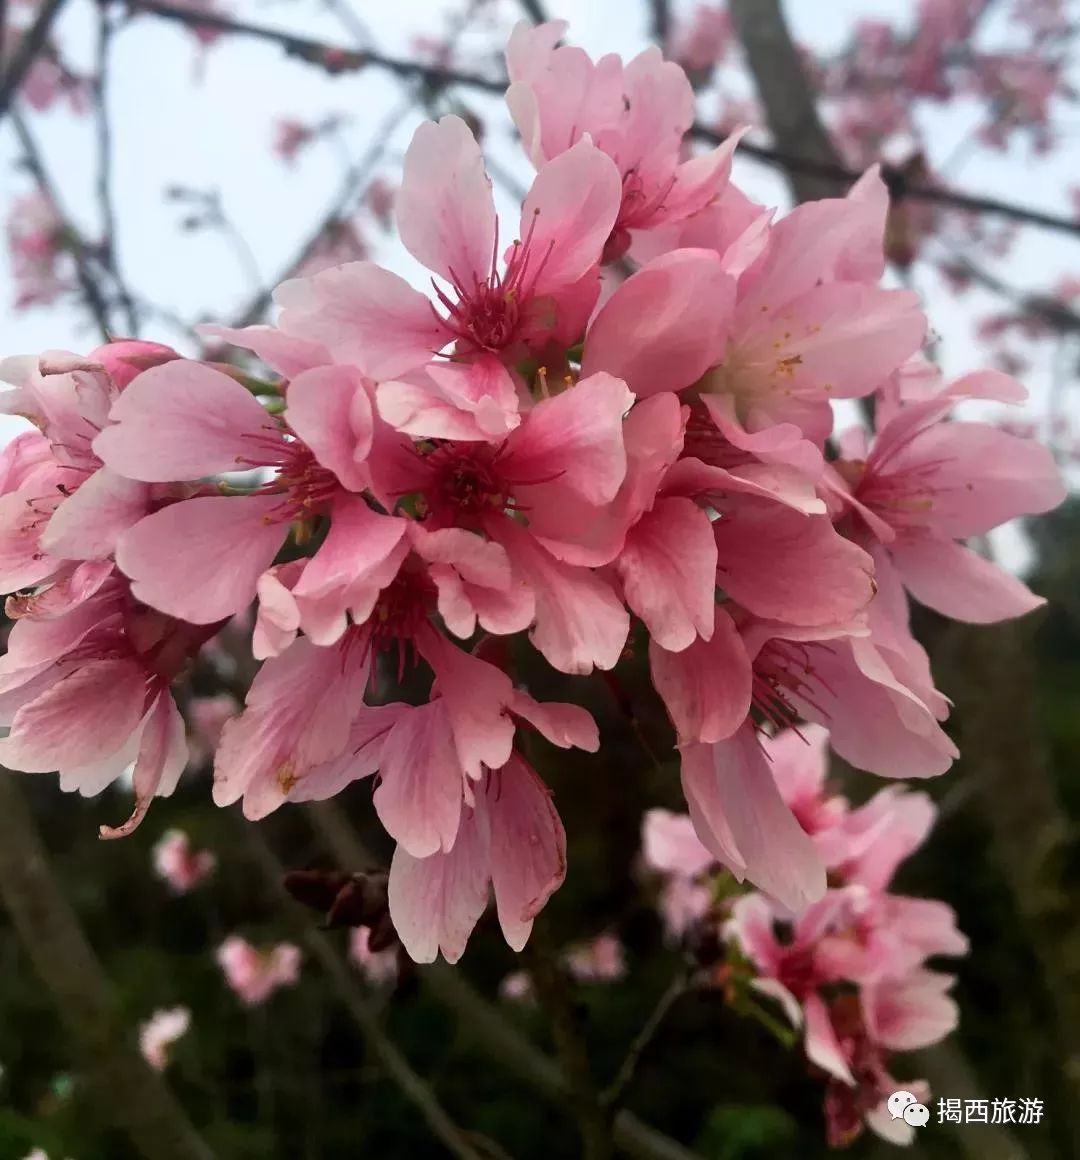 揭西首届樱花节欢迎您!2018春节好去处!约会吧!